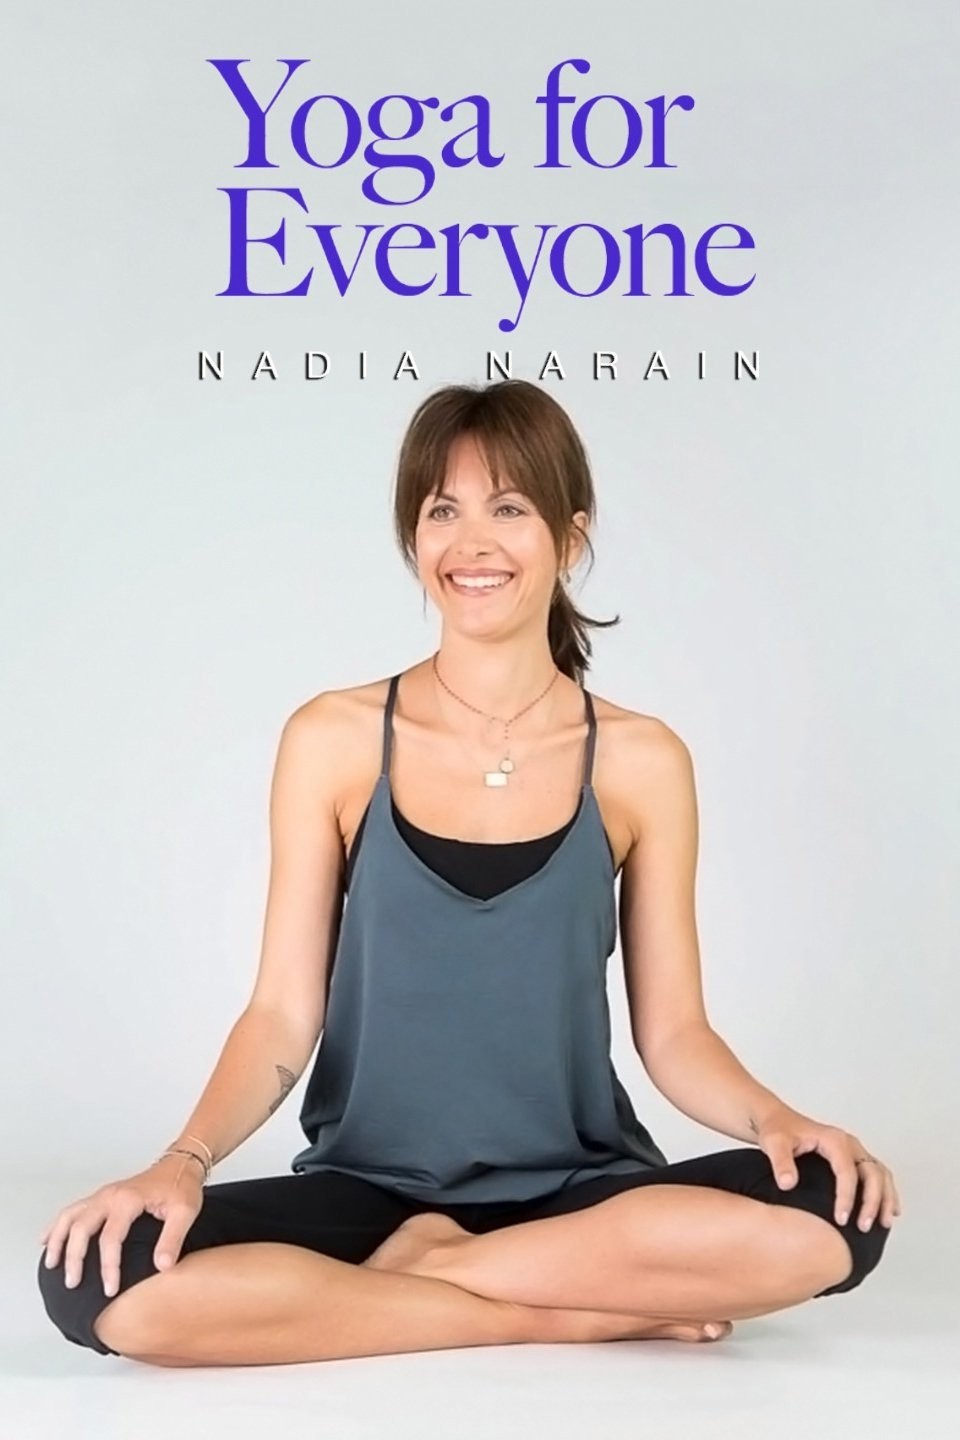 Daily Yoga with Nadia Narain - Yoga and Fitness TV